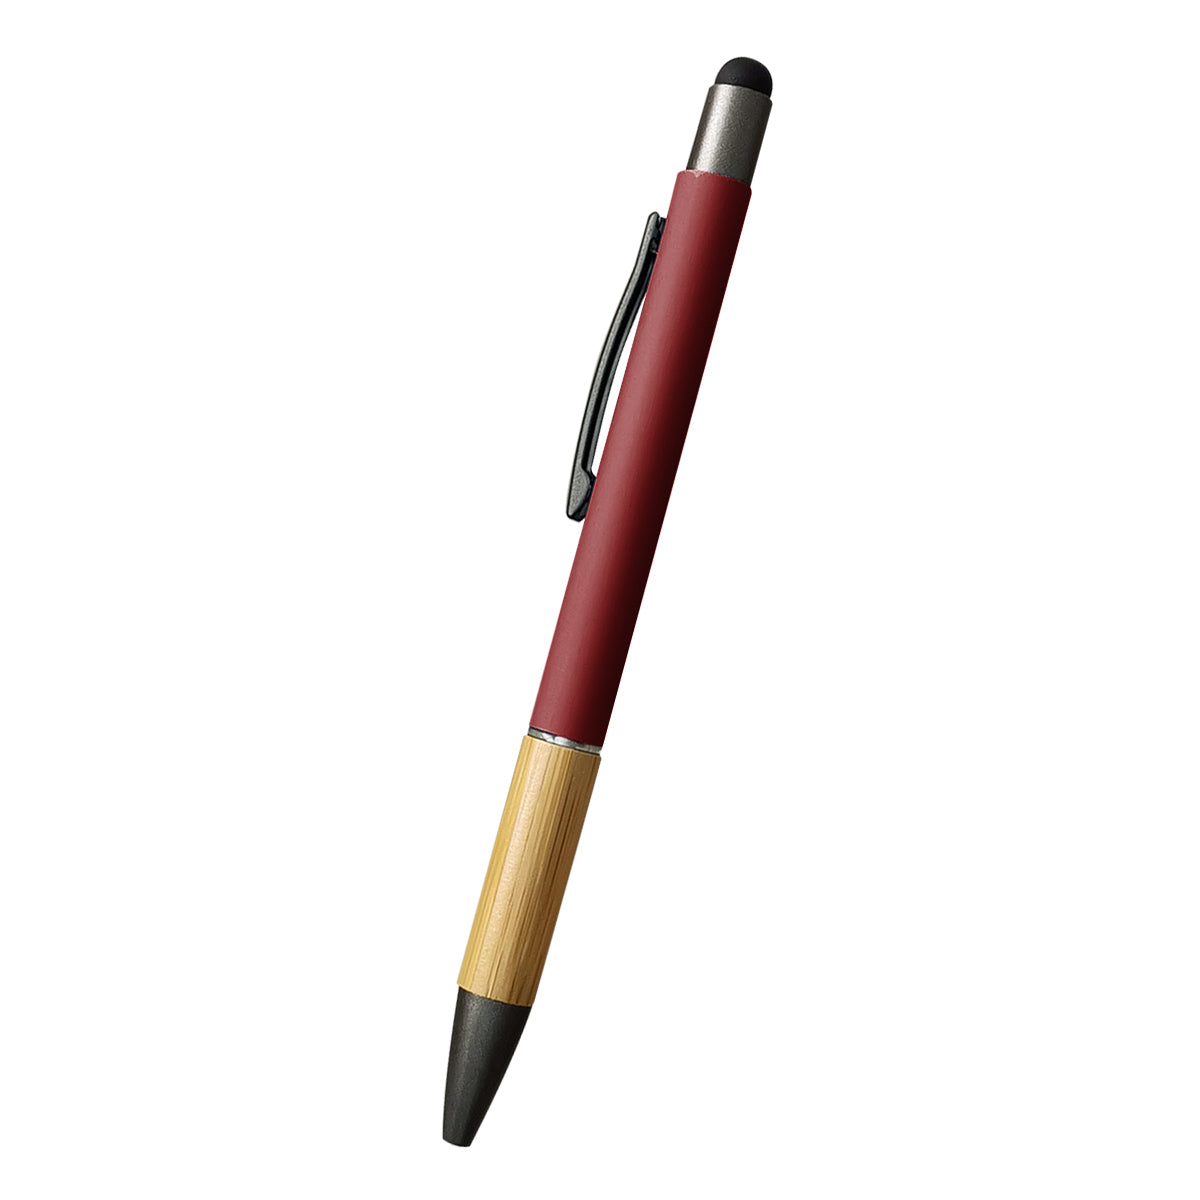 Customizable Aidan bamboo stylus pen in red.